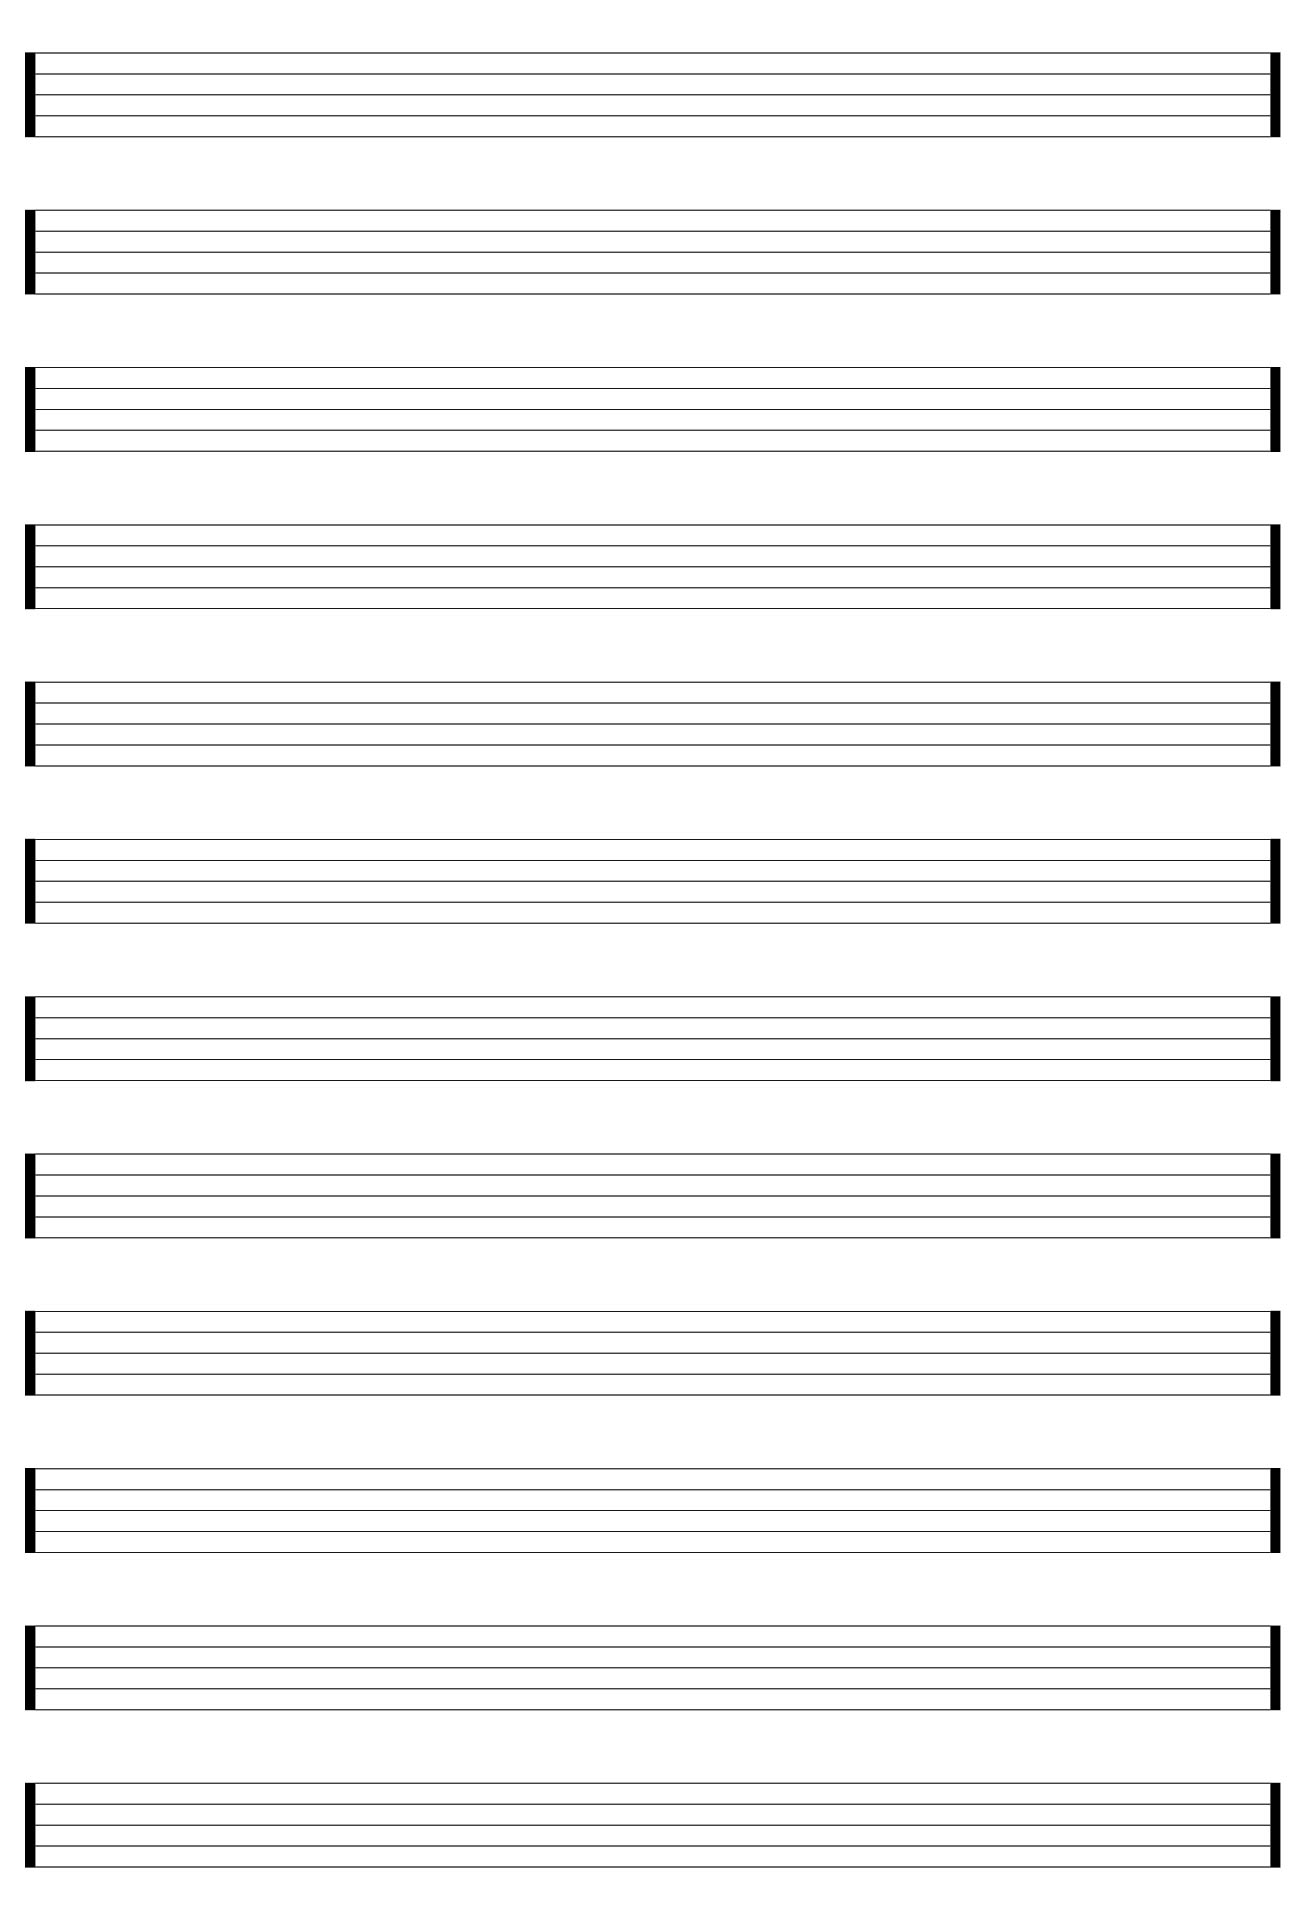 10-best-free-printable-staff-paper-blank-sheet-music-printablee